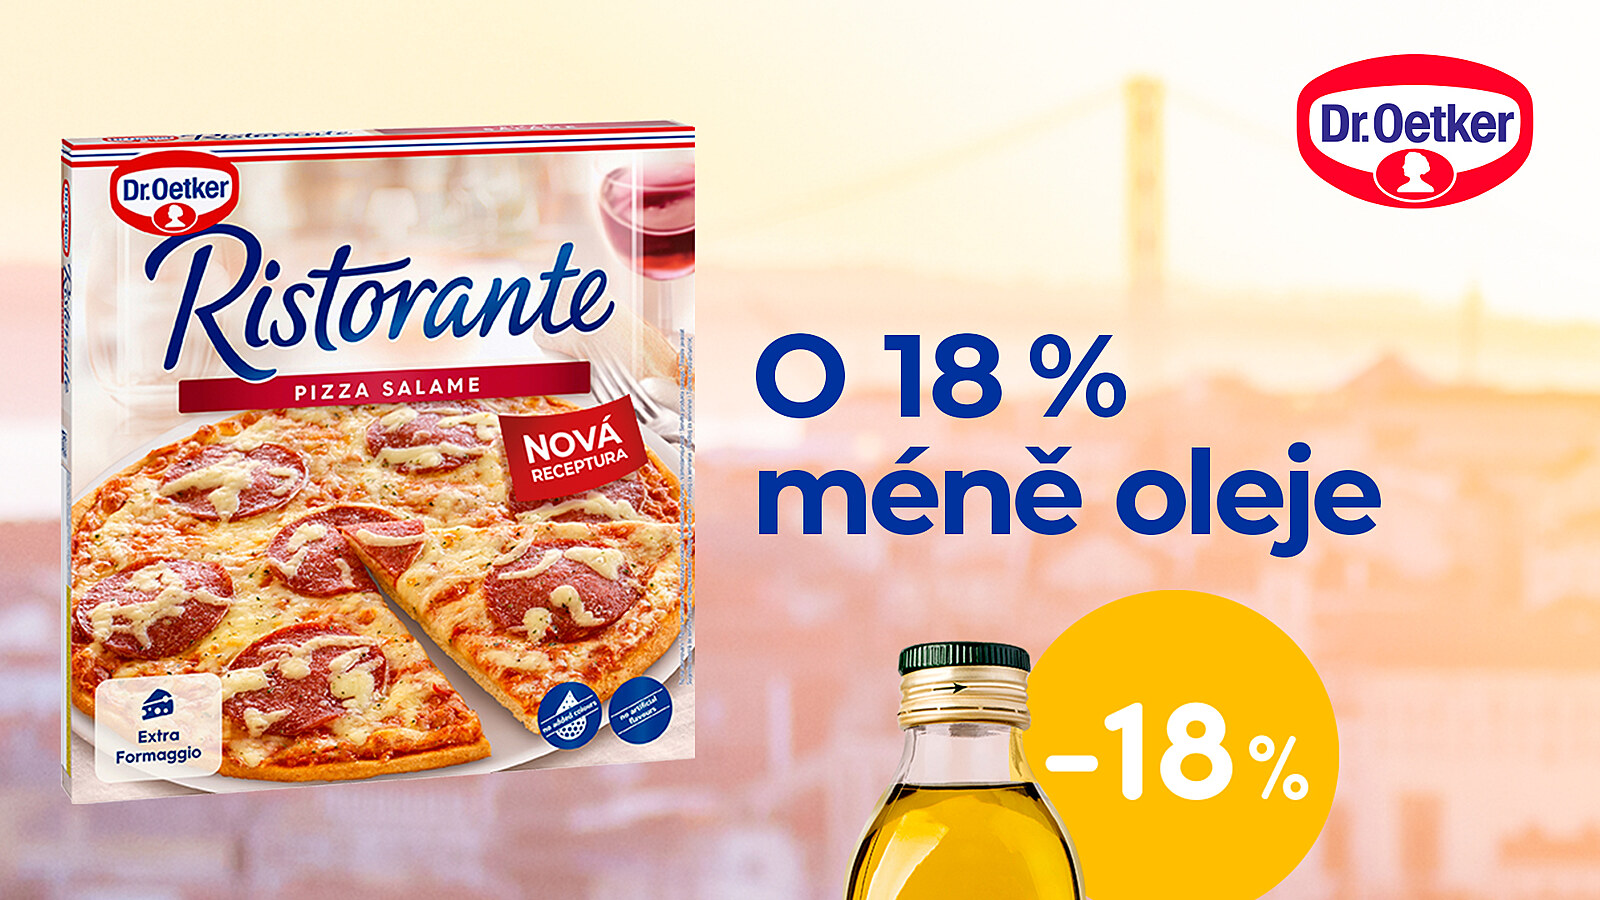 Fenomén pizza Ristorante v nových obalech. Změnil se také výrobek? -  iDNES.cz